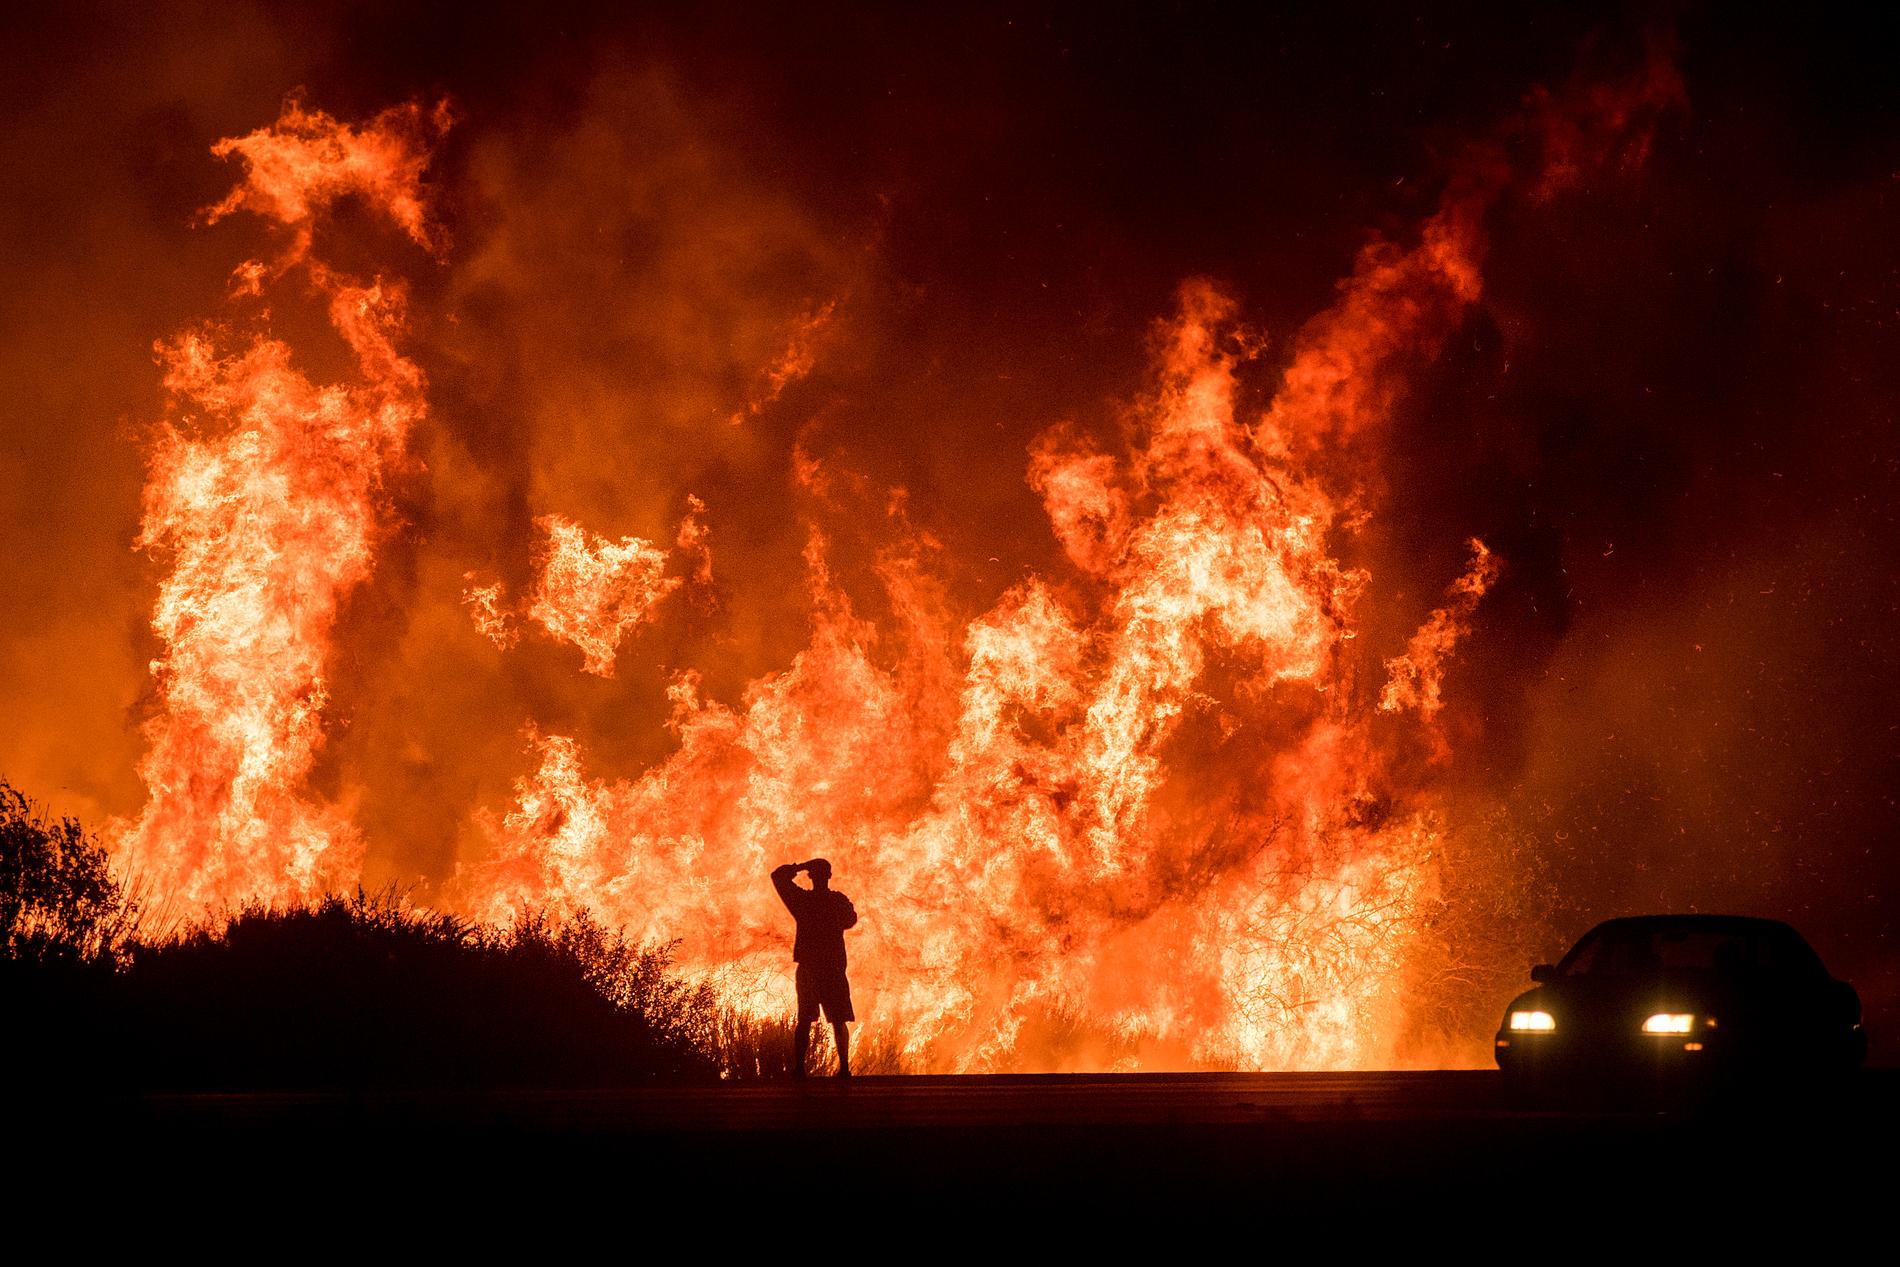 DØDSBRANN: En mann ser på flammehavet nord for Ventura i California. Minst en person er bekreftet omkommet i brannene som herjer delstaten. 